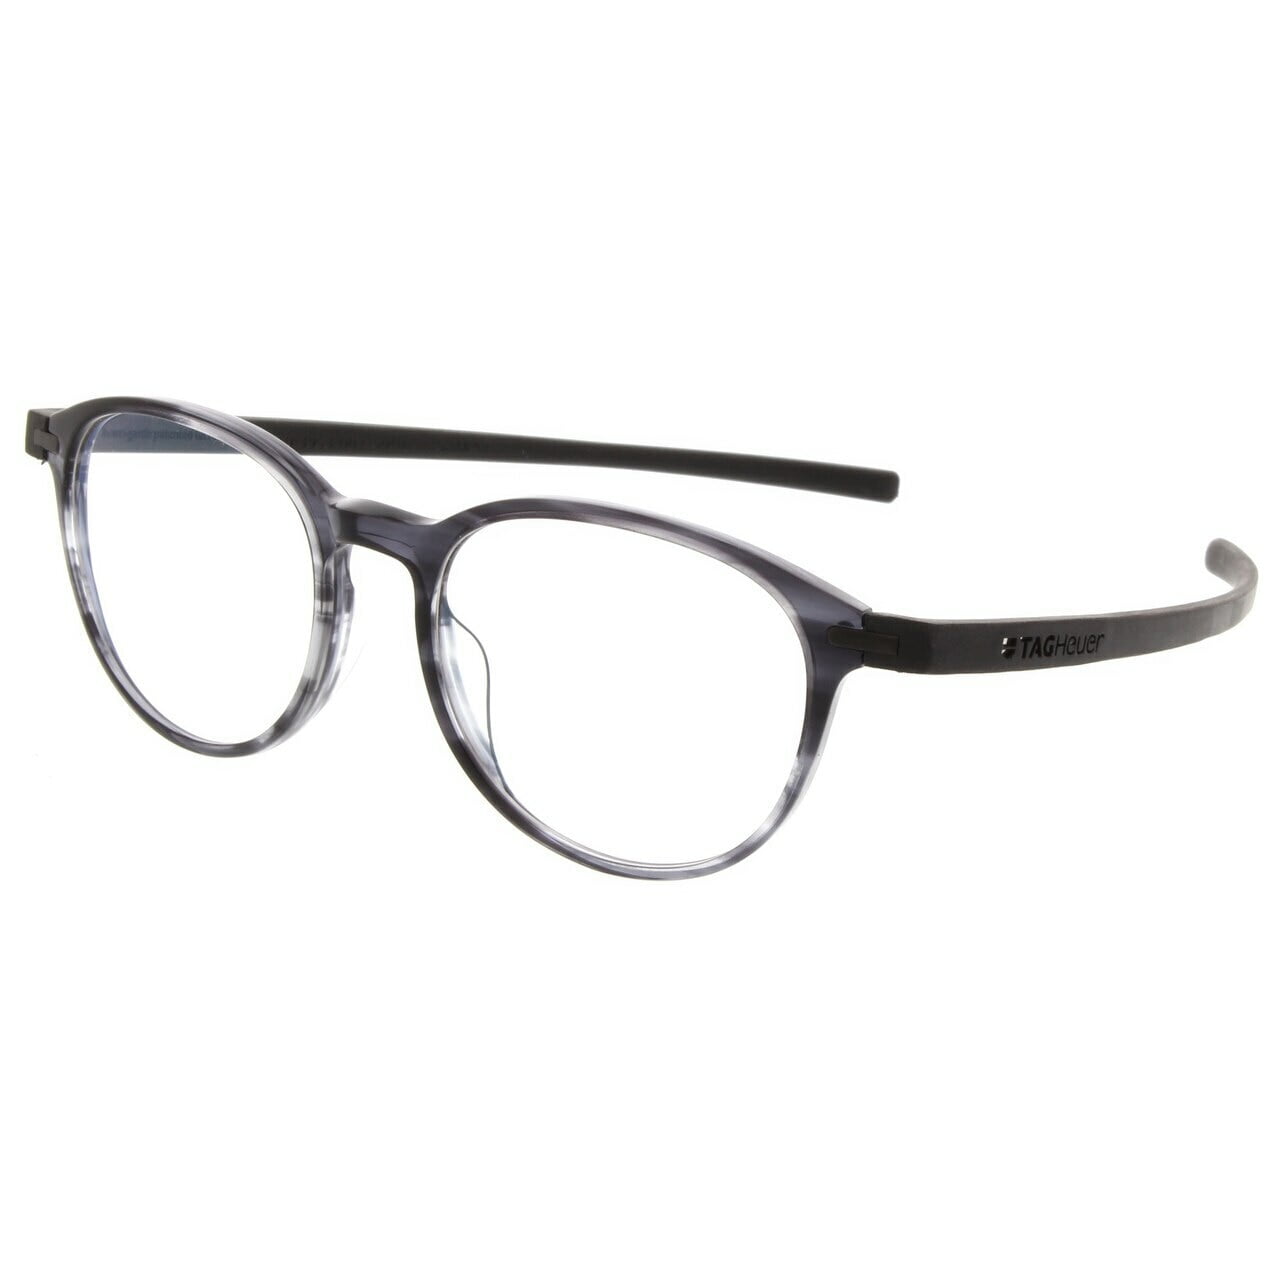 TAG Heuer 3953 Reflex 3 Round Prescription Rx Eyeglasses Frames - Grey ...